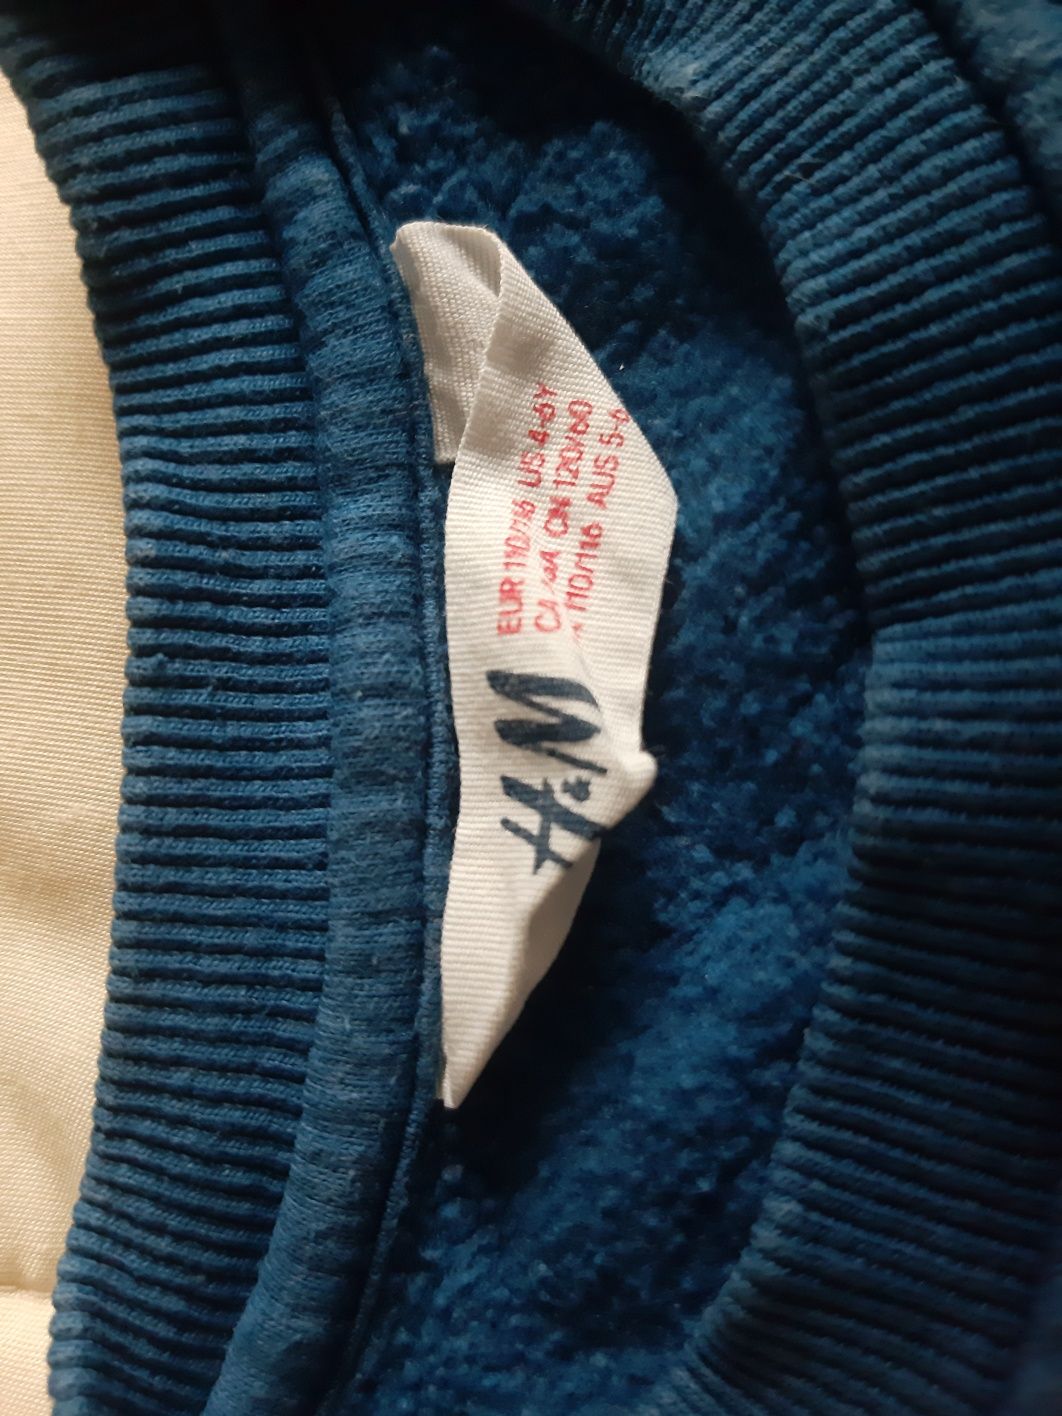 Bluza zima bałwan H&M 110-116, 4-6 lat